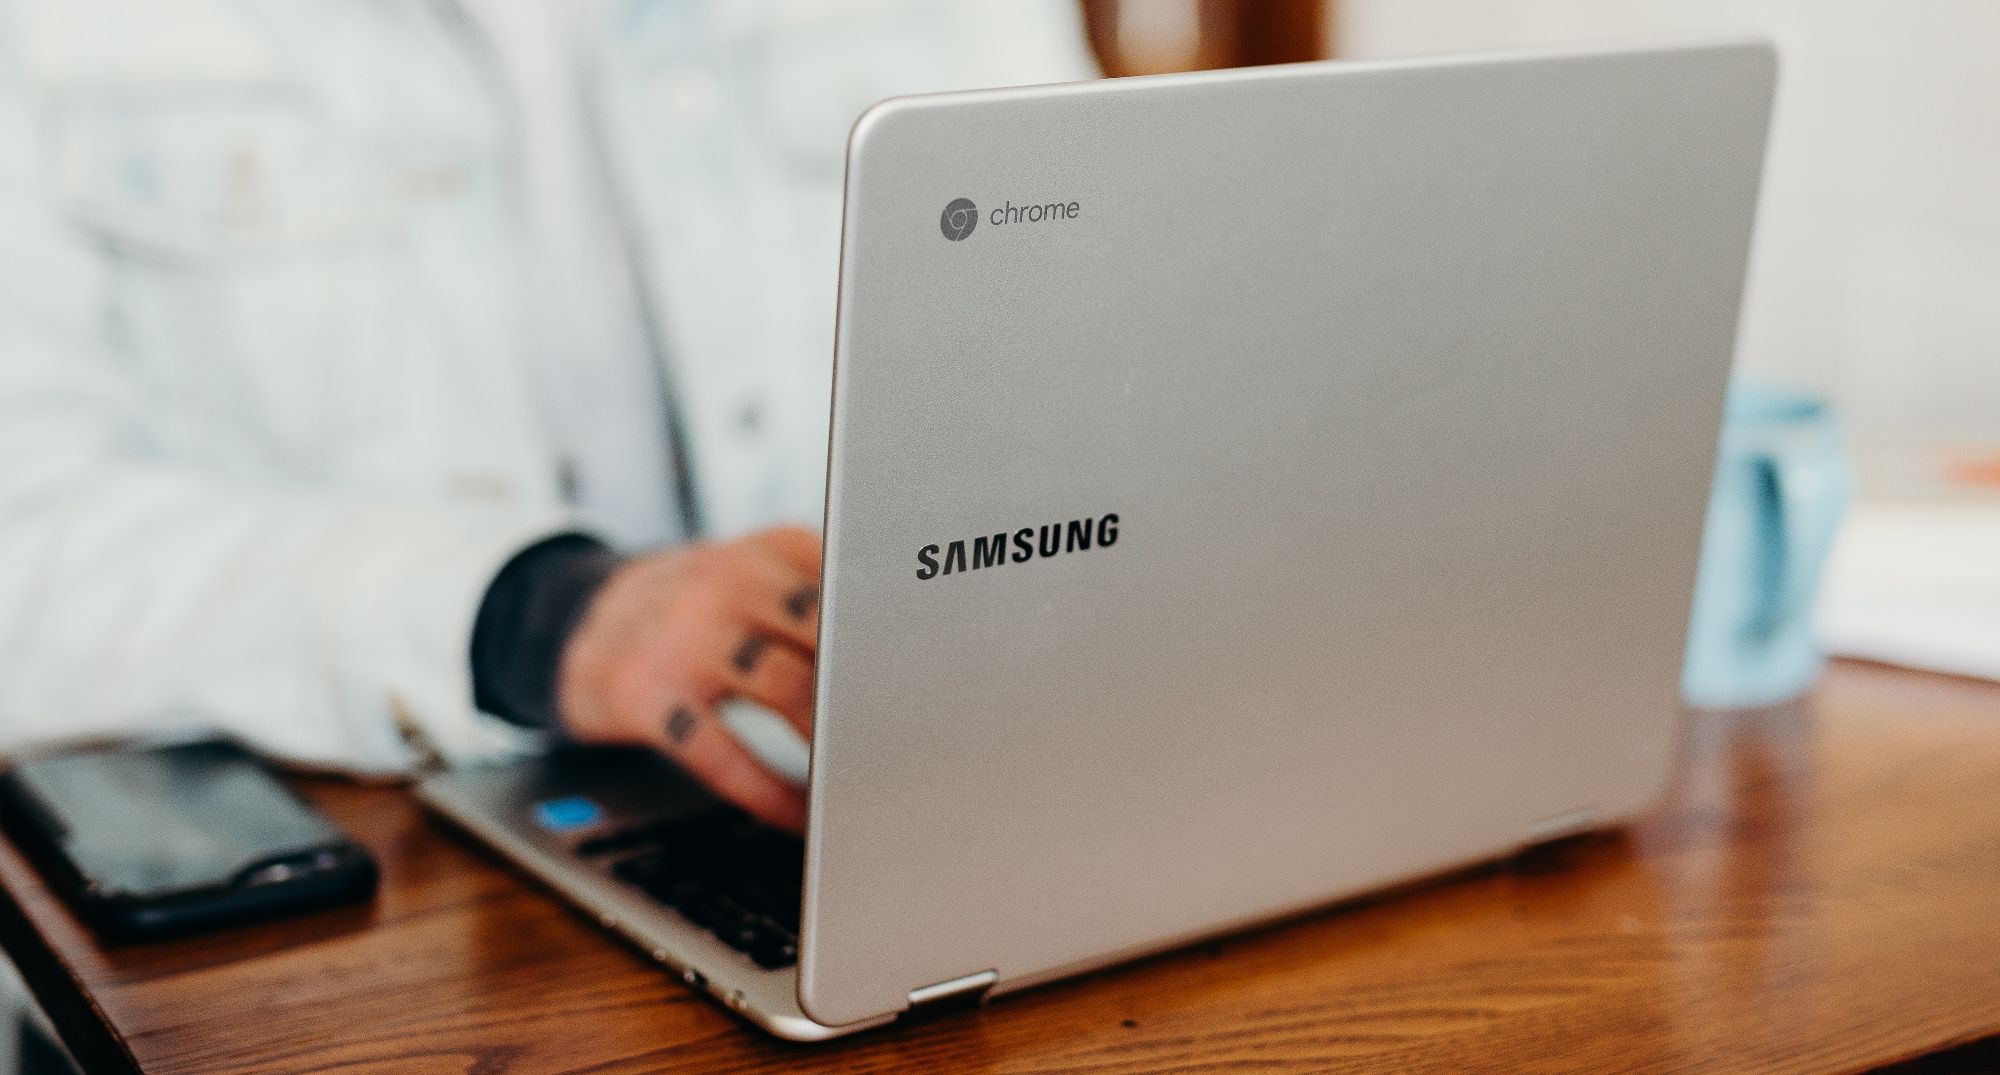 Samsung Chromebook en uso en el escritorio